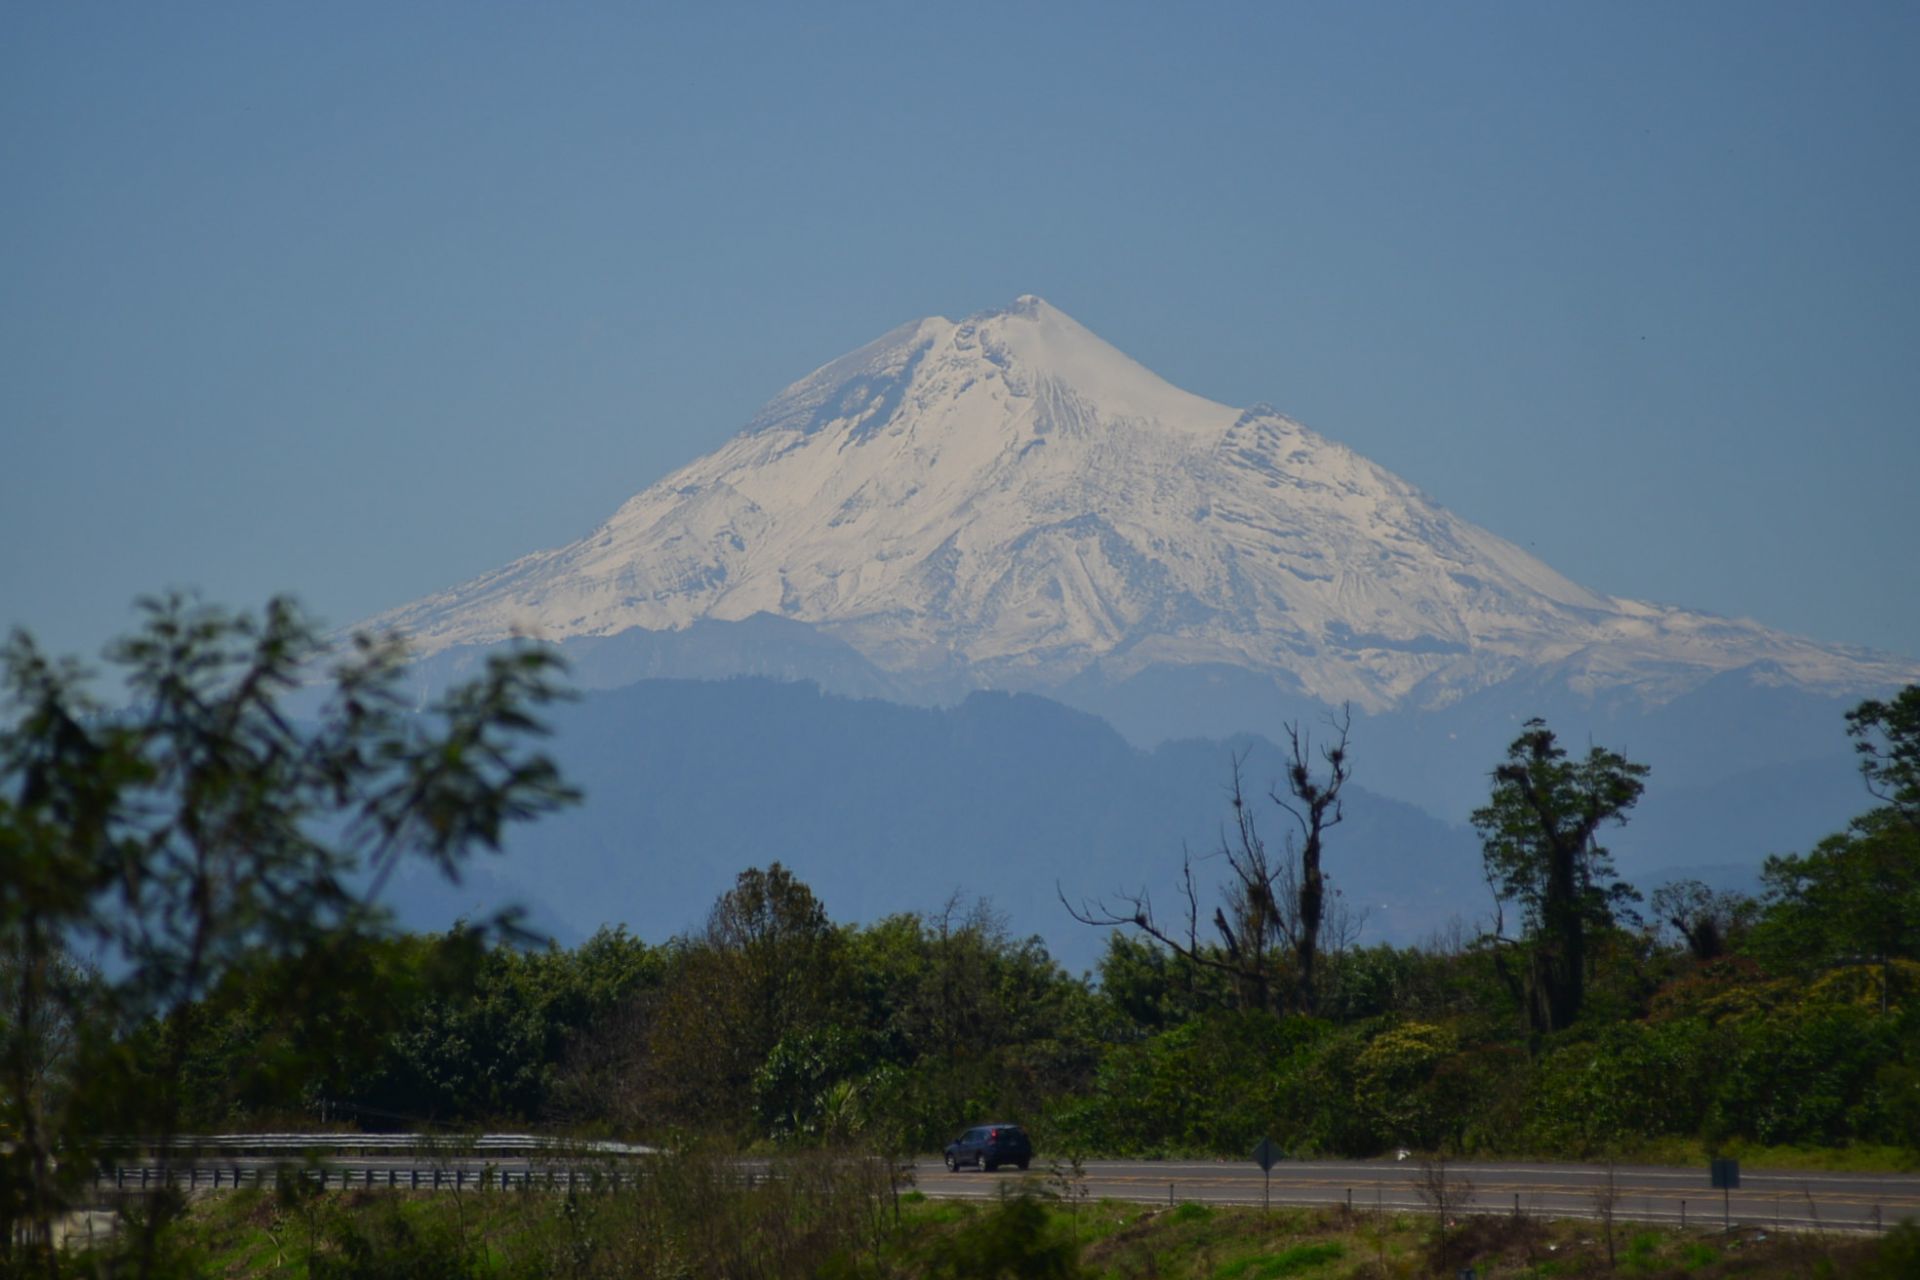 Vista del "Citlaltépetl" o Pico de Orizaba desde la carretera Xalapa-Coatepec en Veracruz. (FOTO: ALBERTO ROA /CUARTOSCURO.COM)